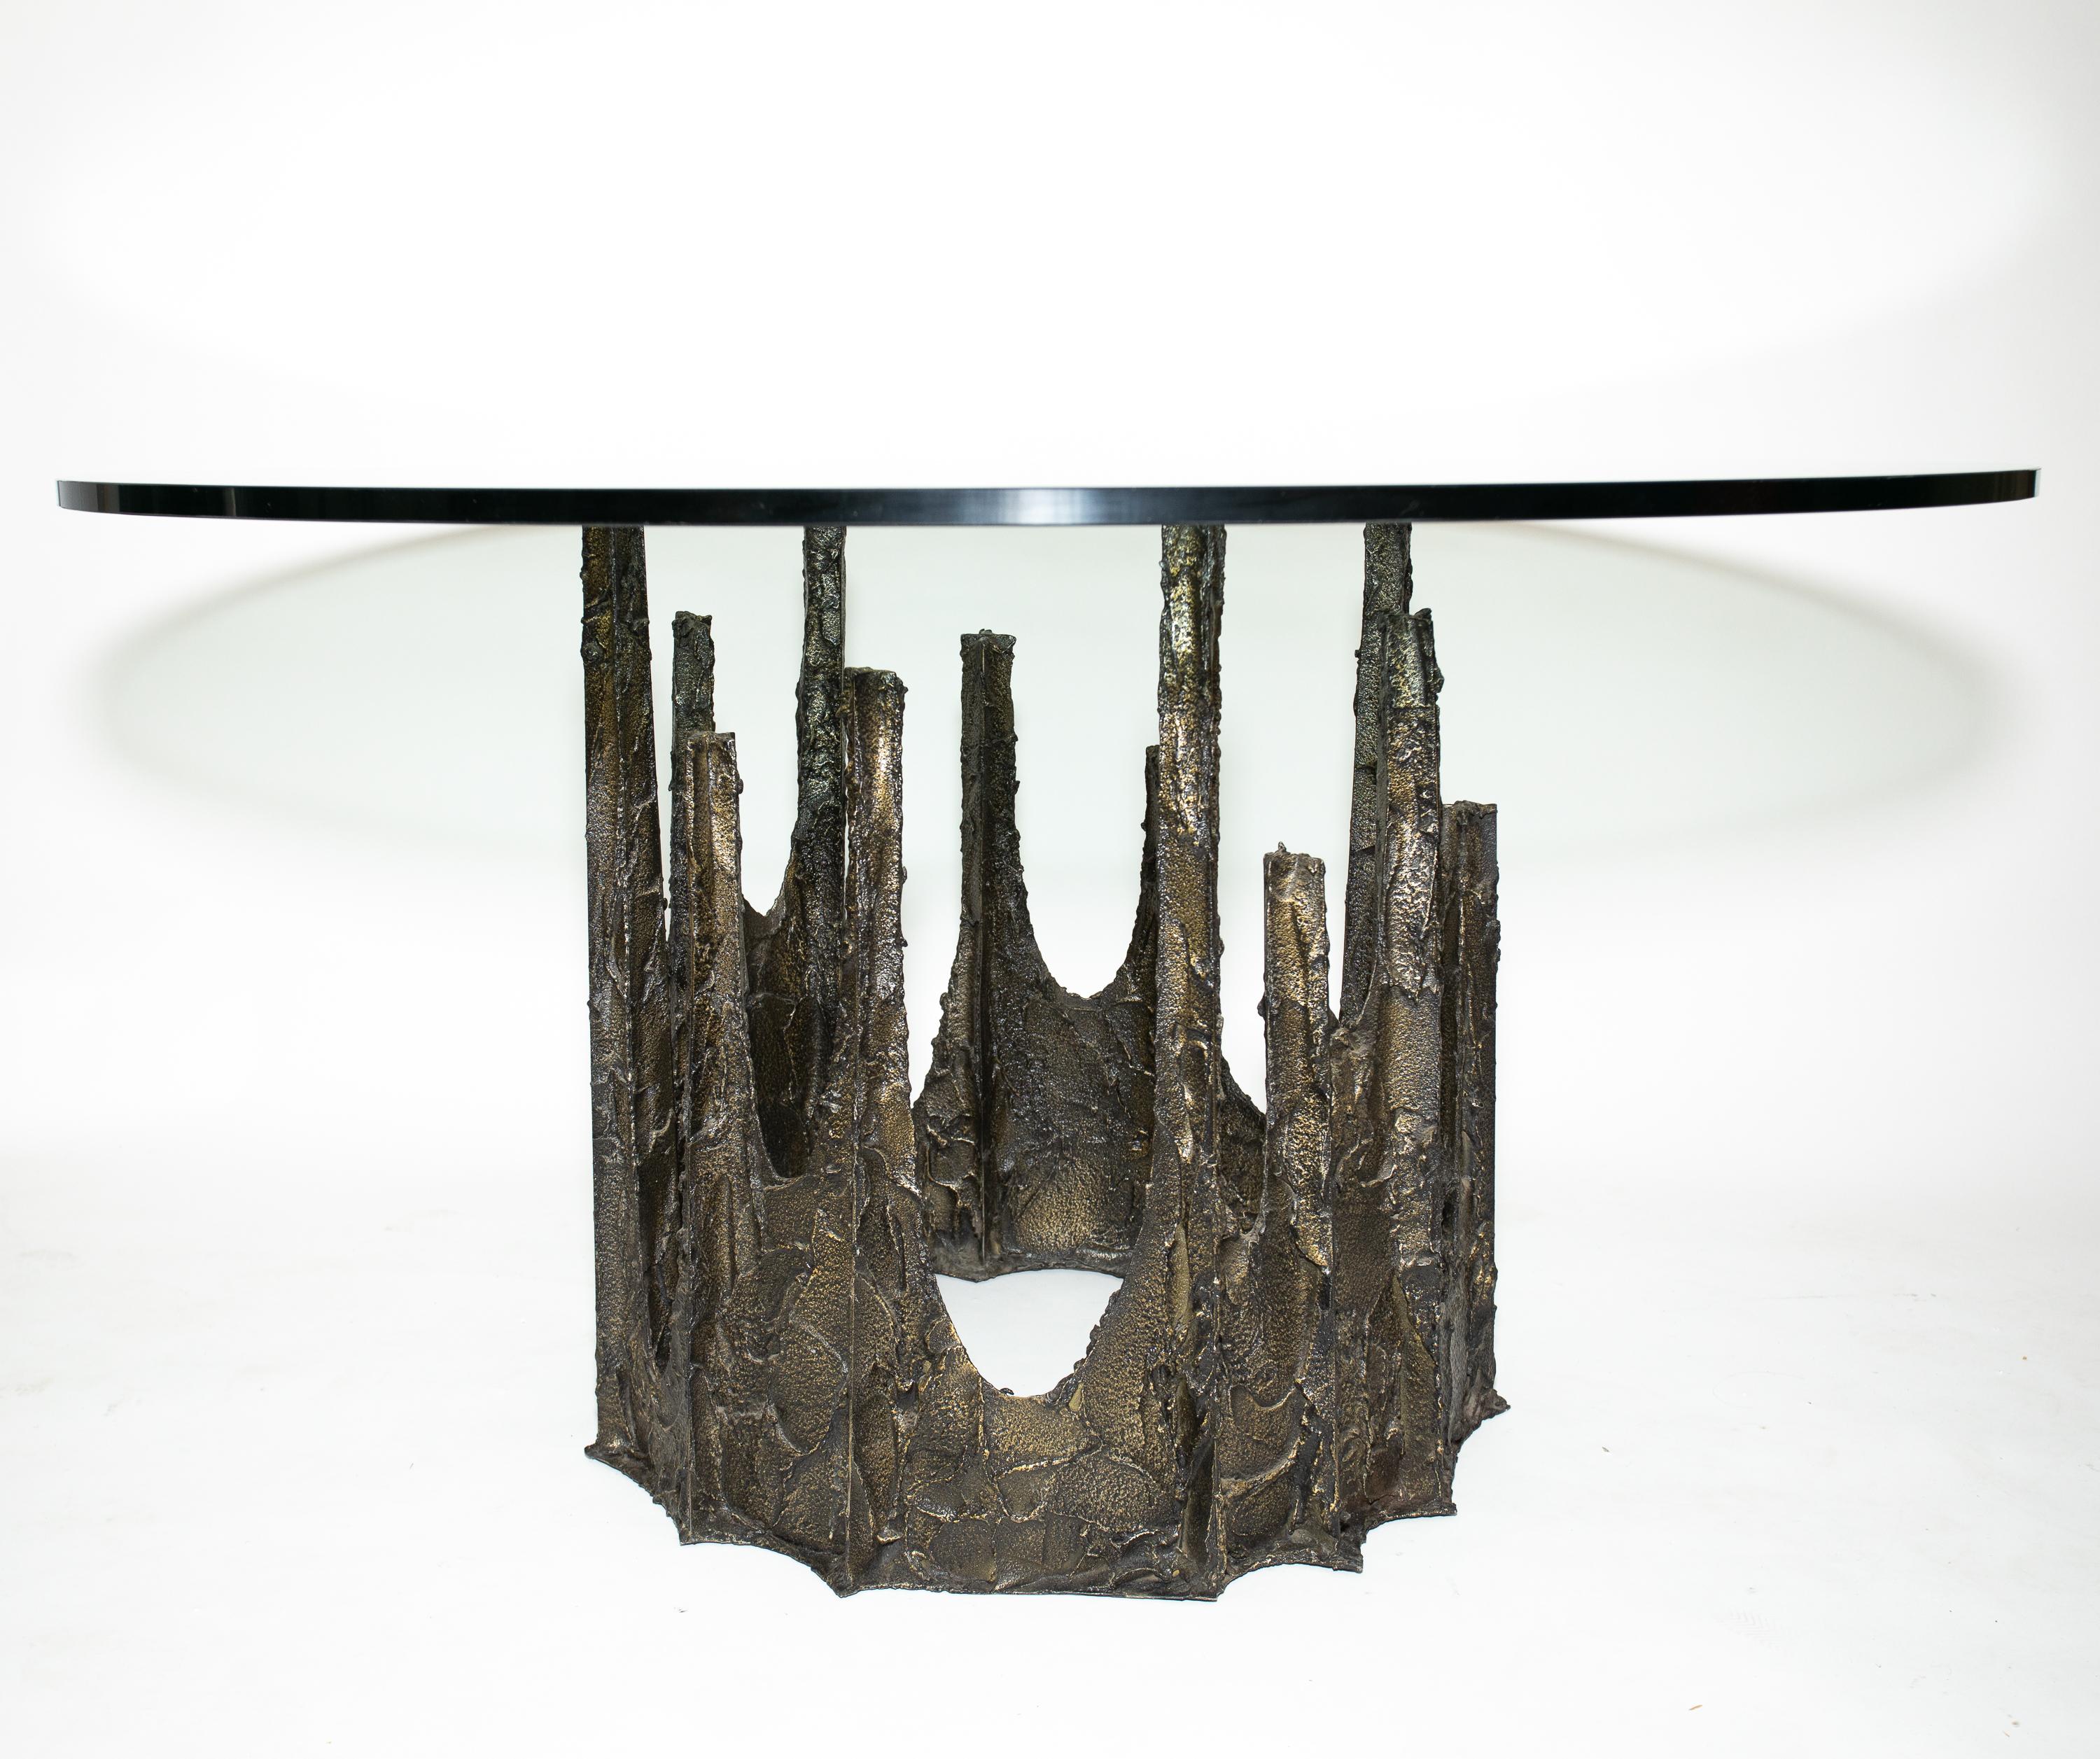 Table de salle à manger en bronze stalactite sculptée de Paul Evans
Dessus en verre 3/4